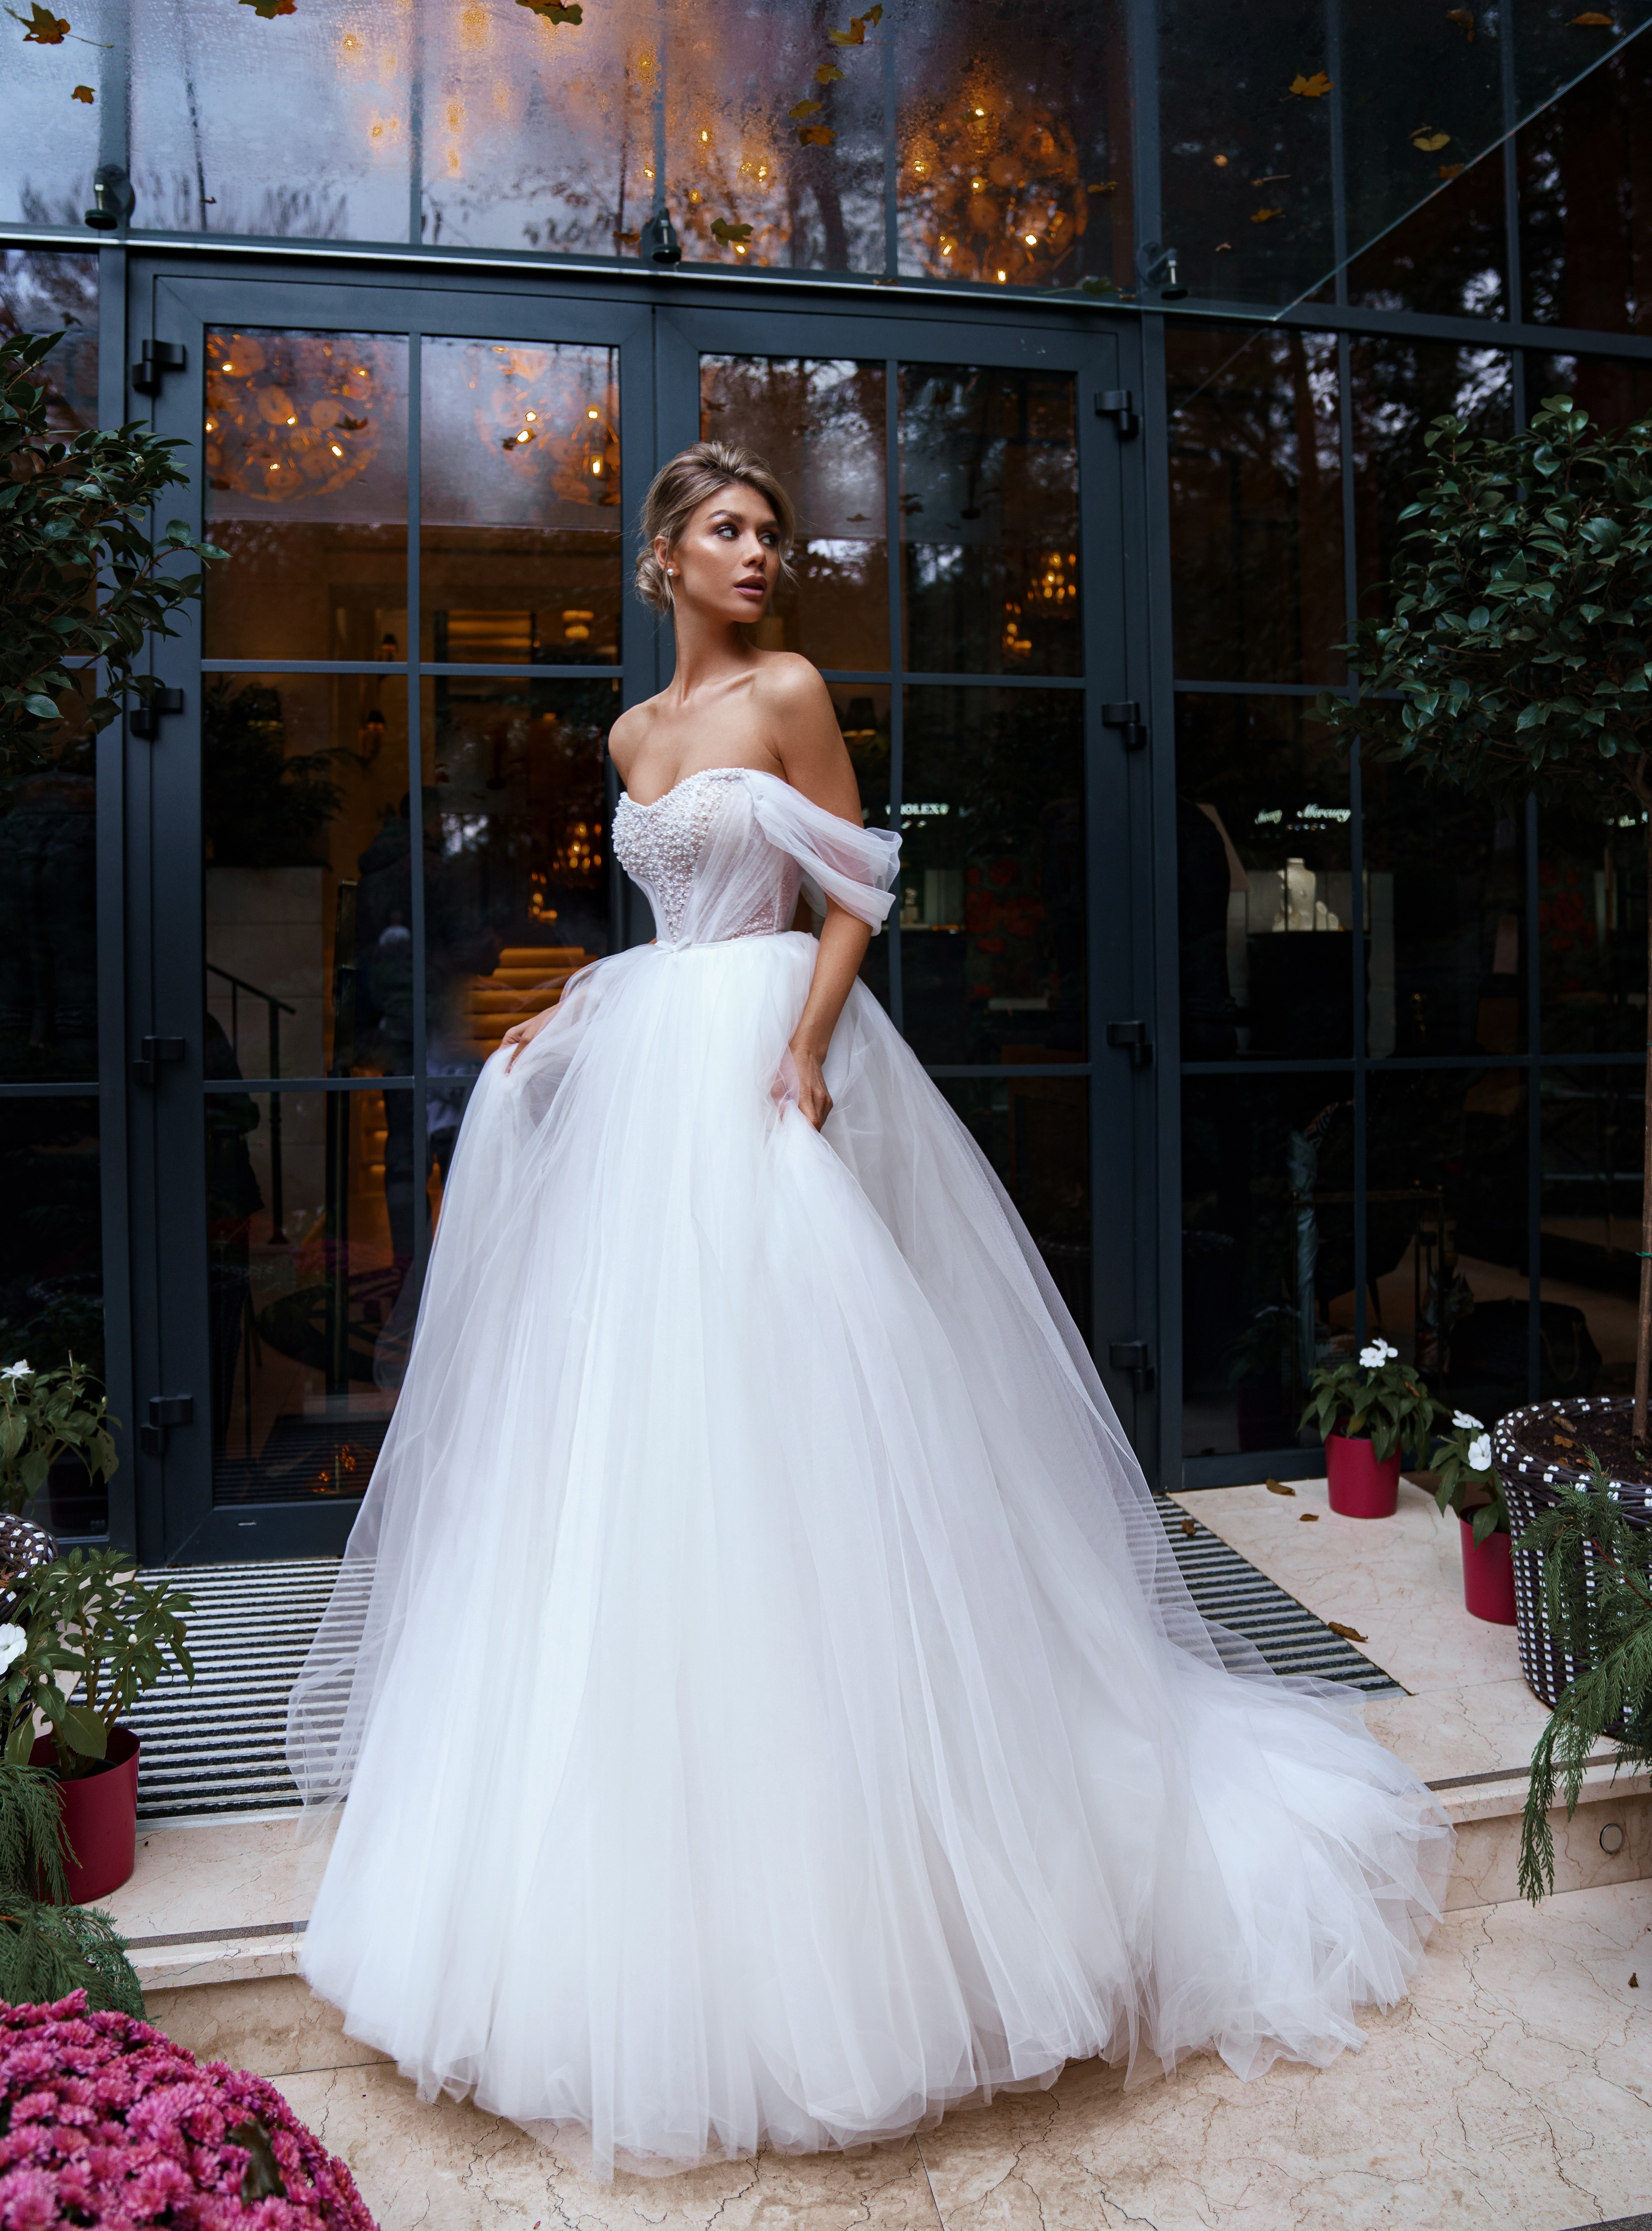 Купить свадебное платье «Адель» Сонеста из коллекции 2022 года в салоне «Мэри Трюфель»